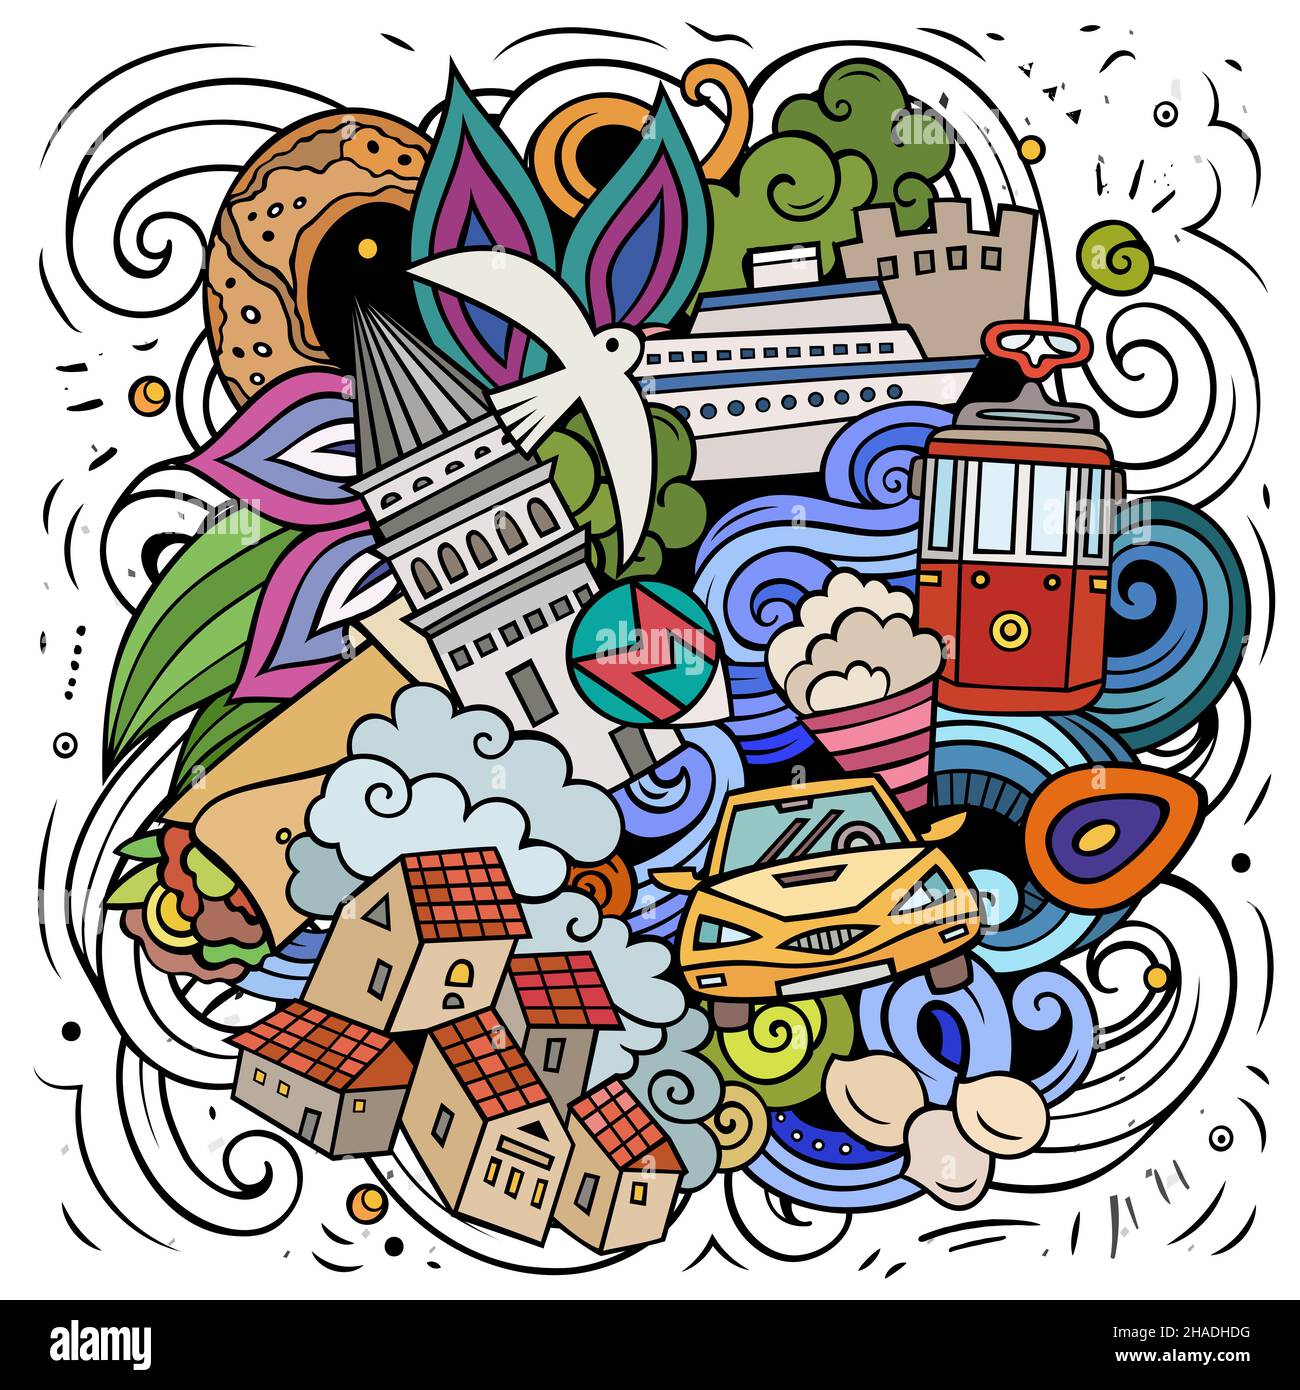 Istanbul Cartoon Vektor Doodle Illustration. Farbenfrohe, detailreiche Komposition mit vielen türkischen Objekten und Symbolen. Stock Vektor